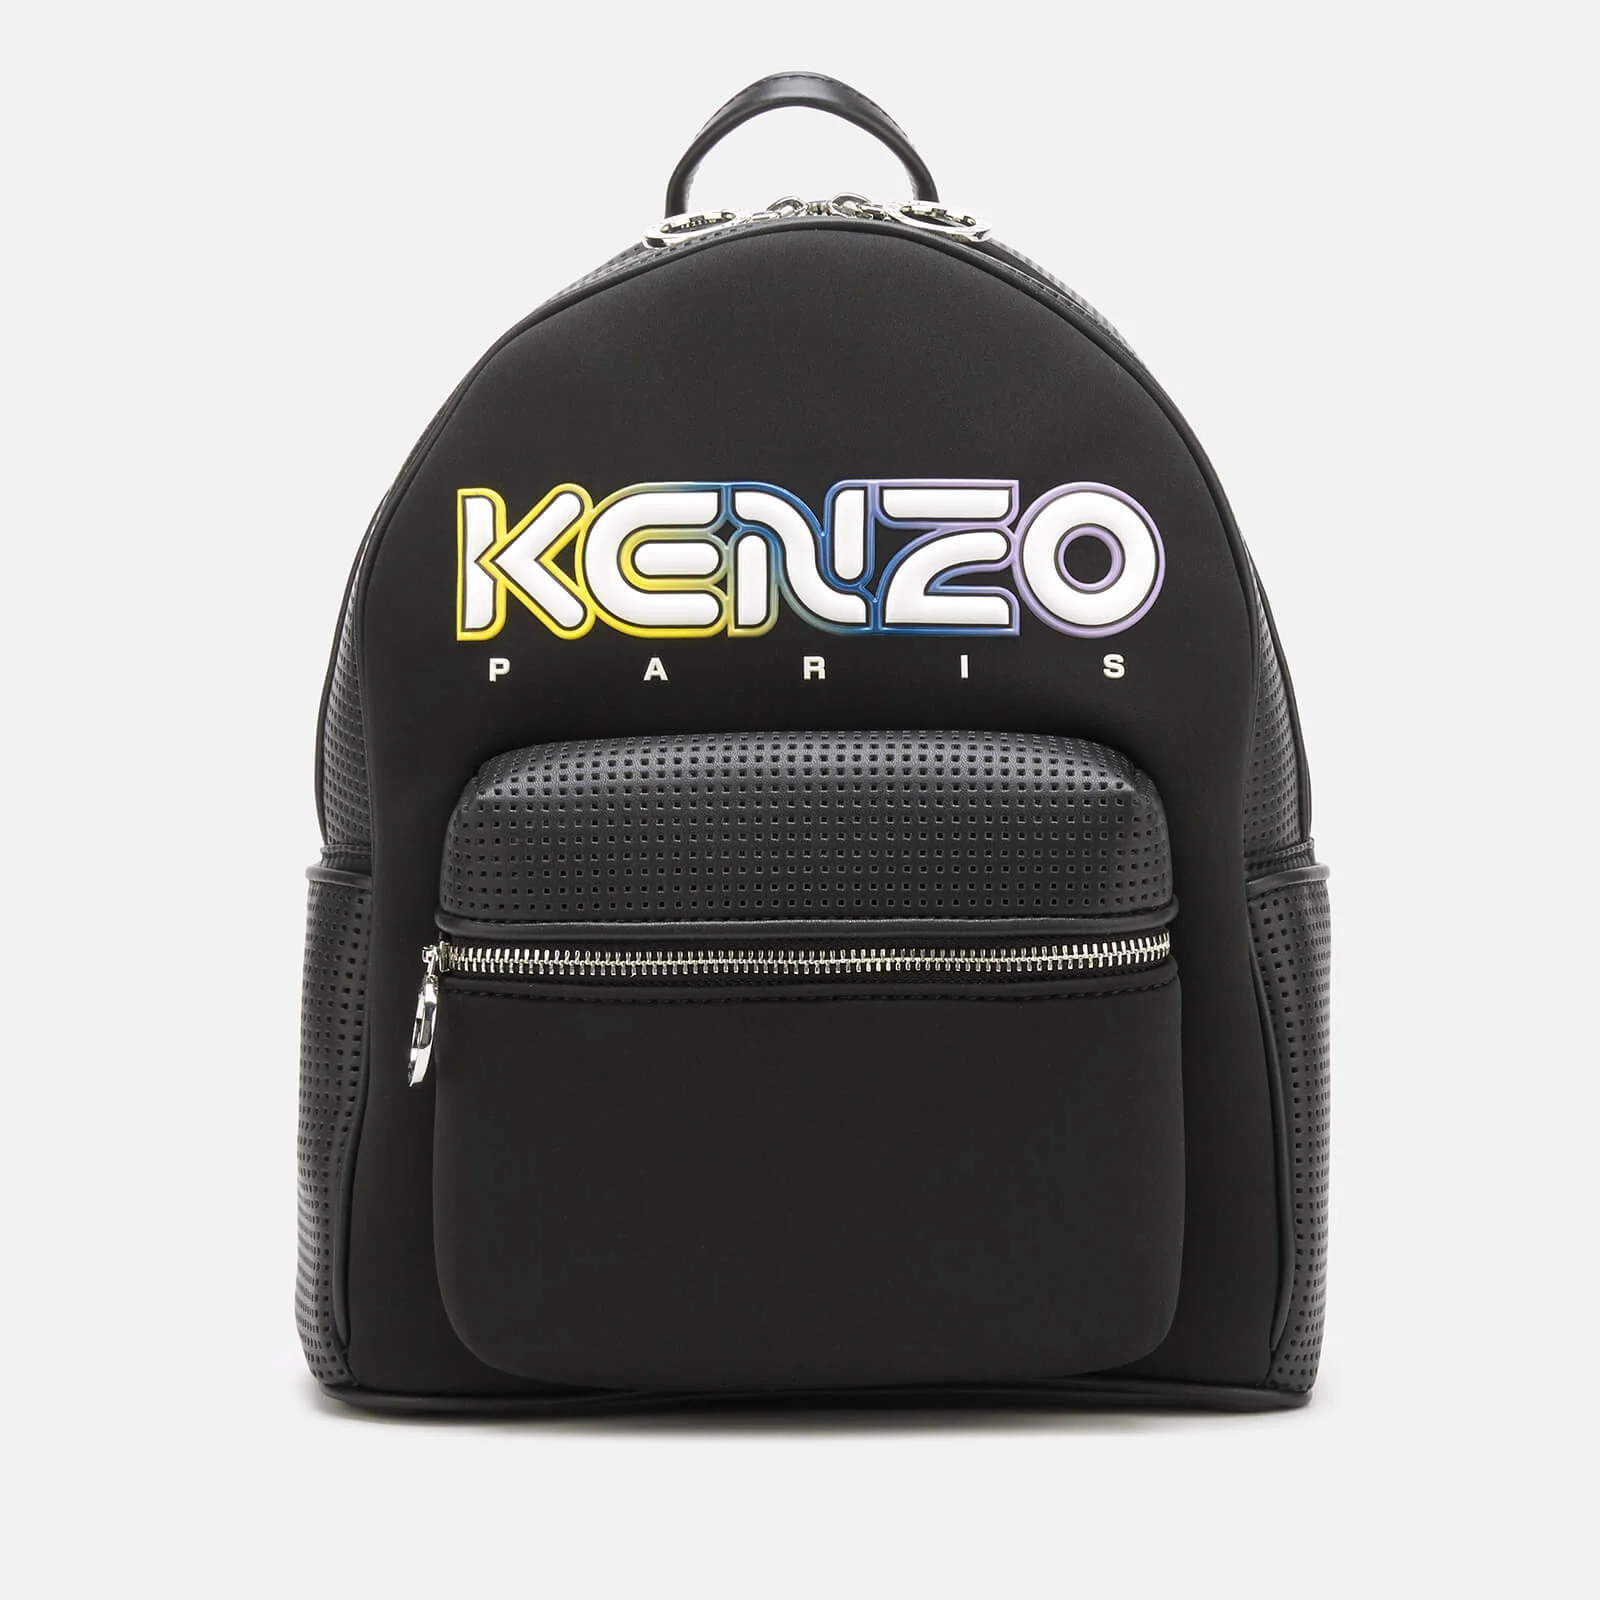 KENZO Women's Combo Backpack - Black Image 1